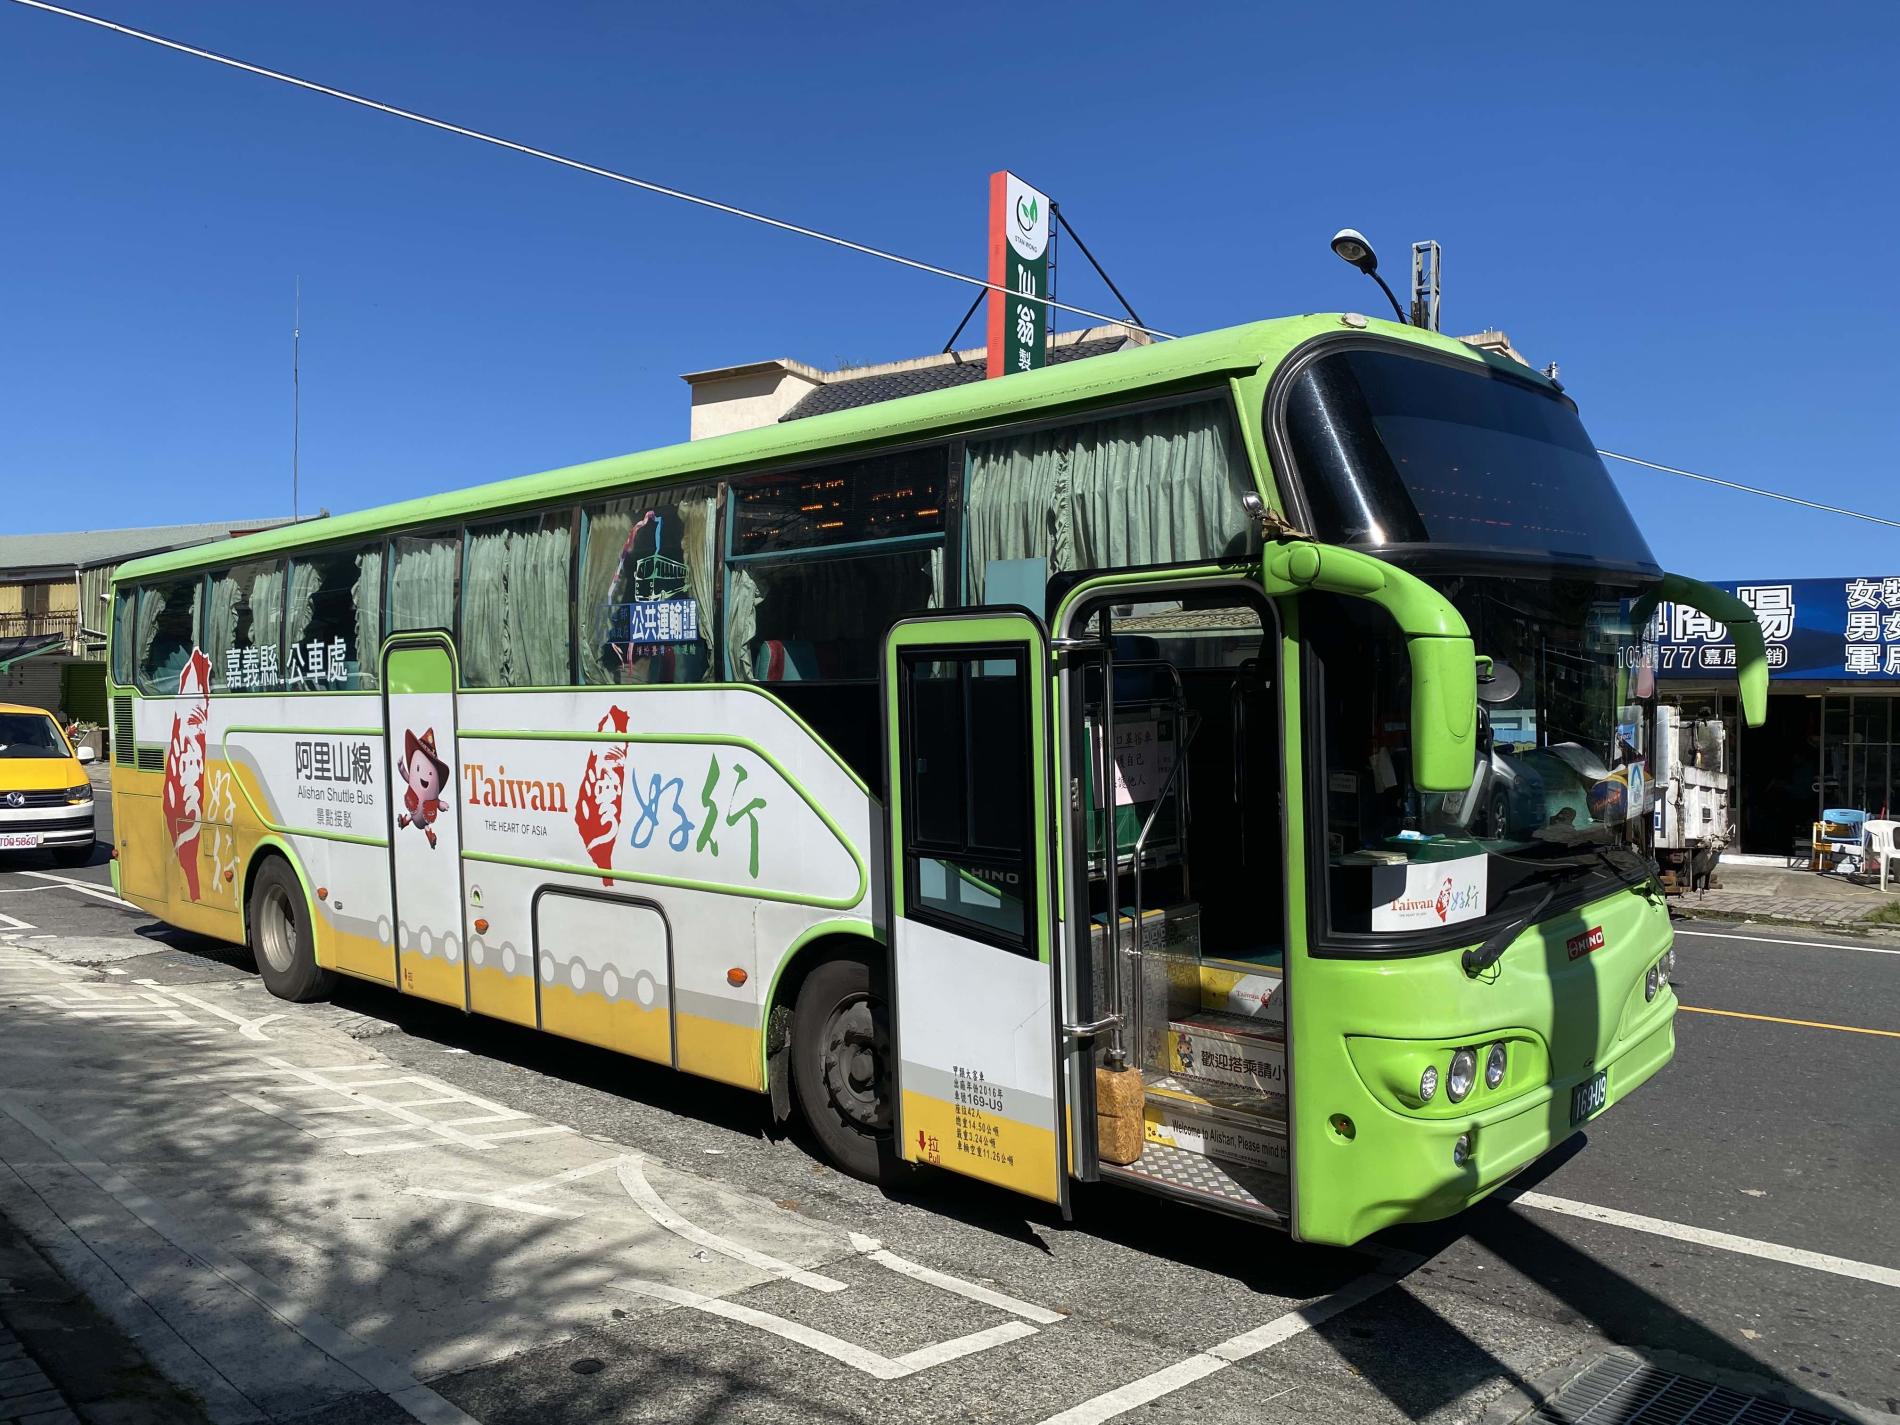 taiwan trip bus